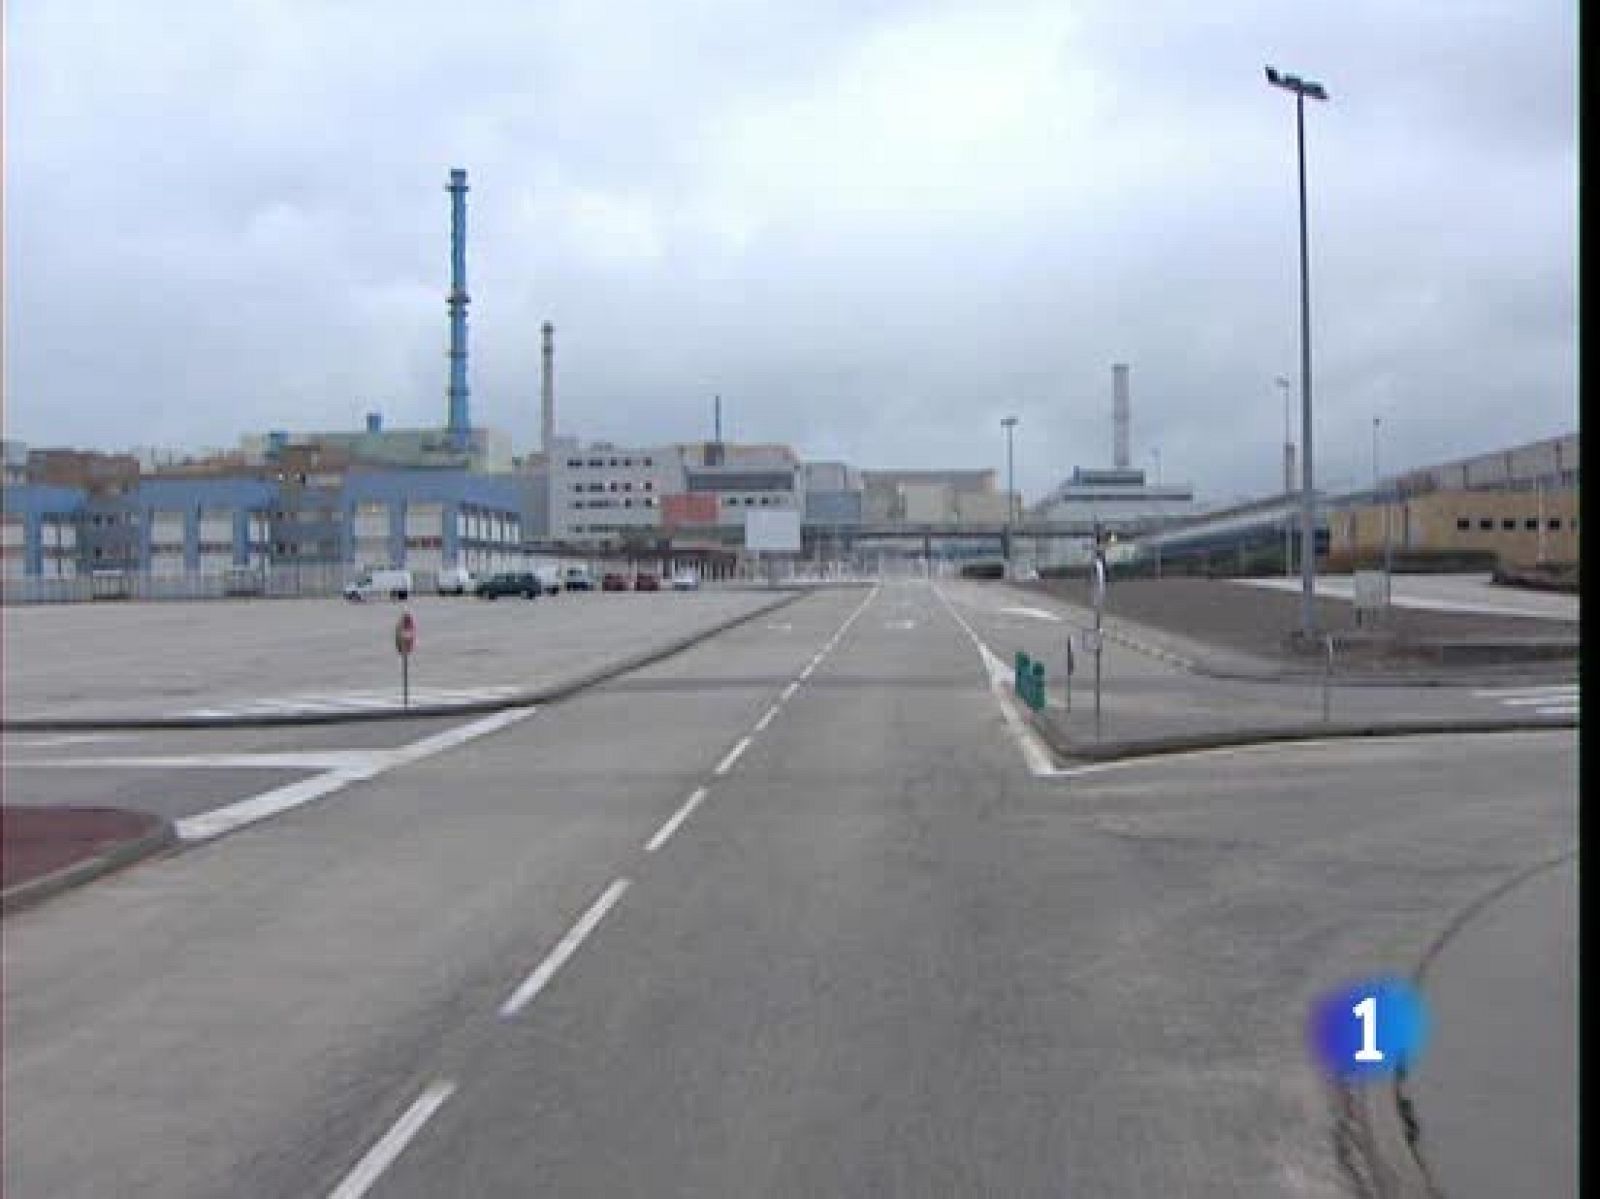 Parte de los residuos radioactivos españoles son tratados o reciclados en Francia